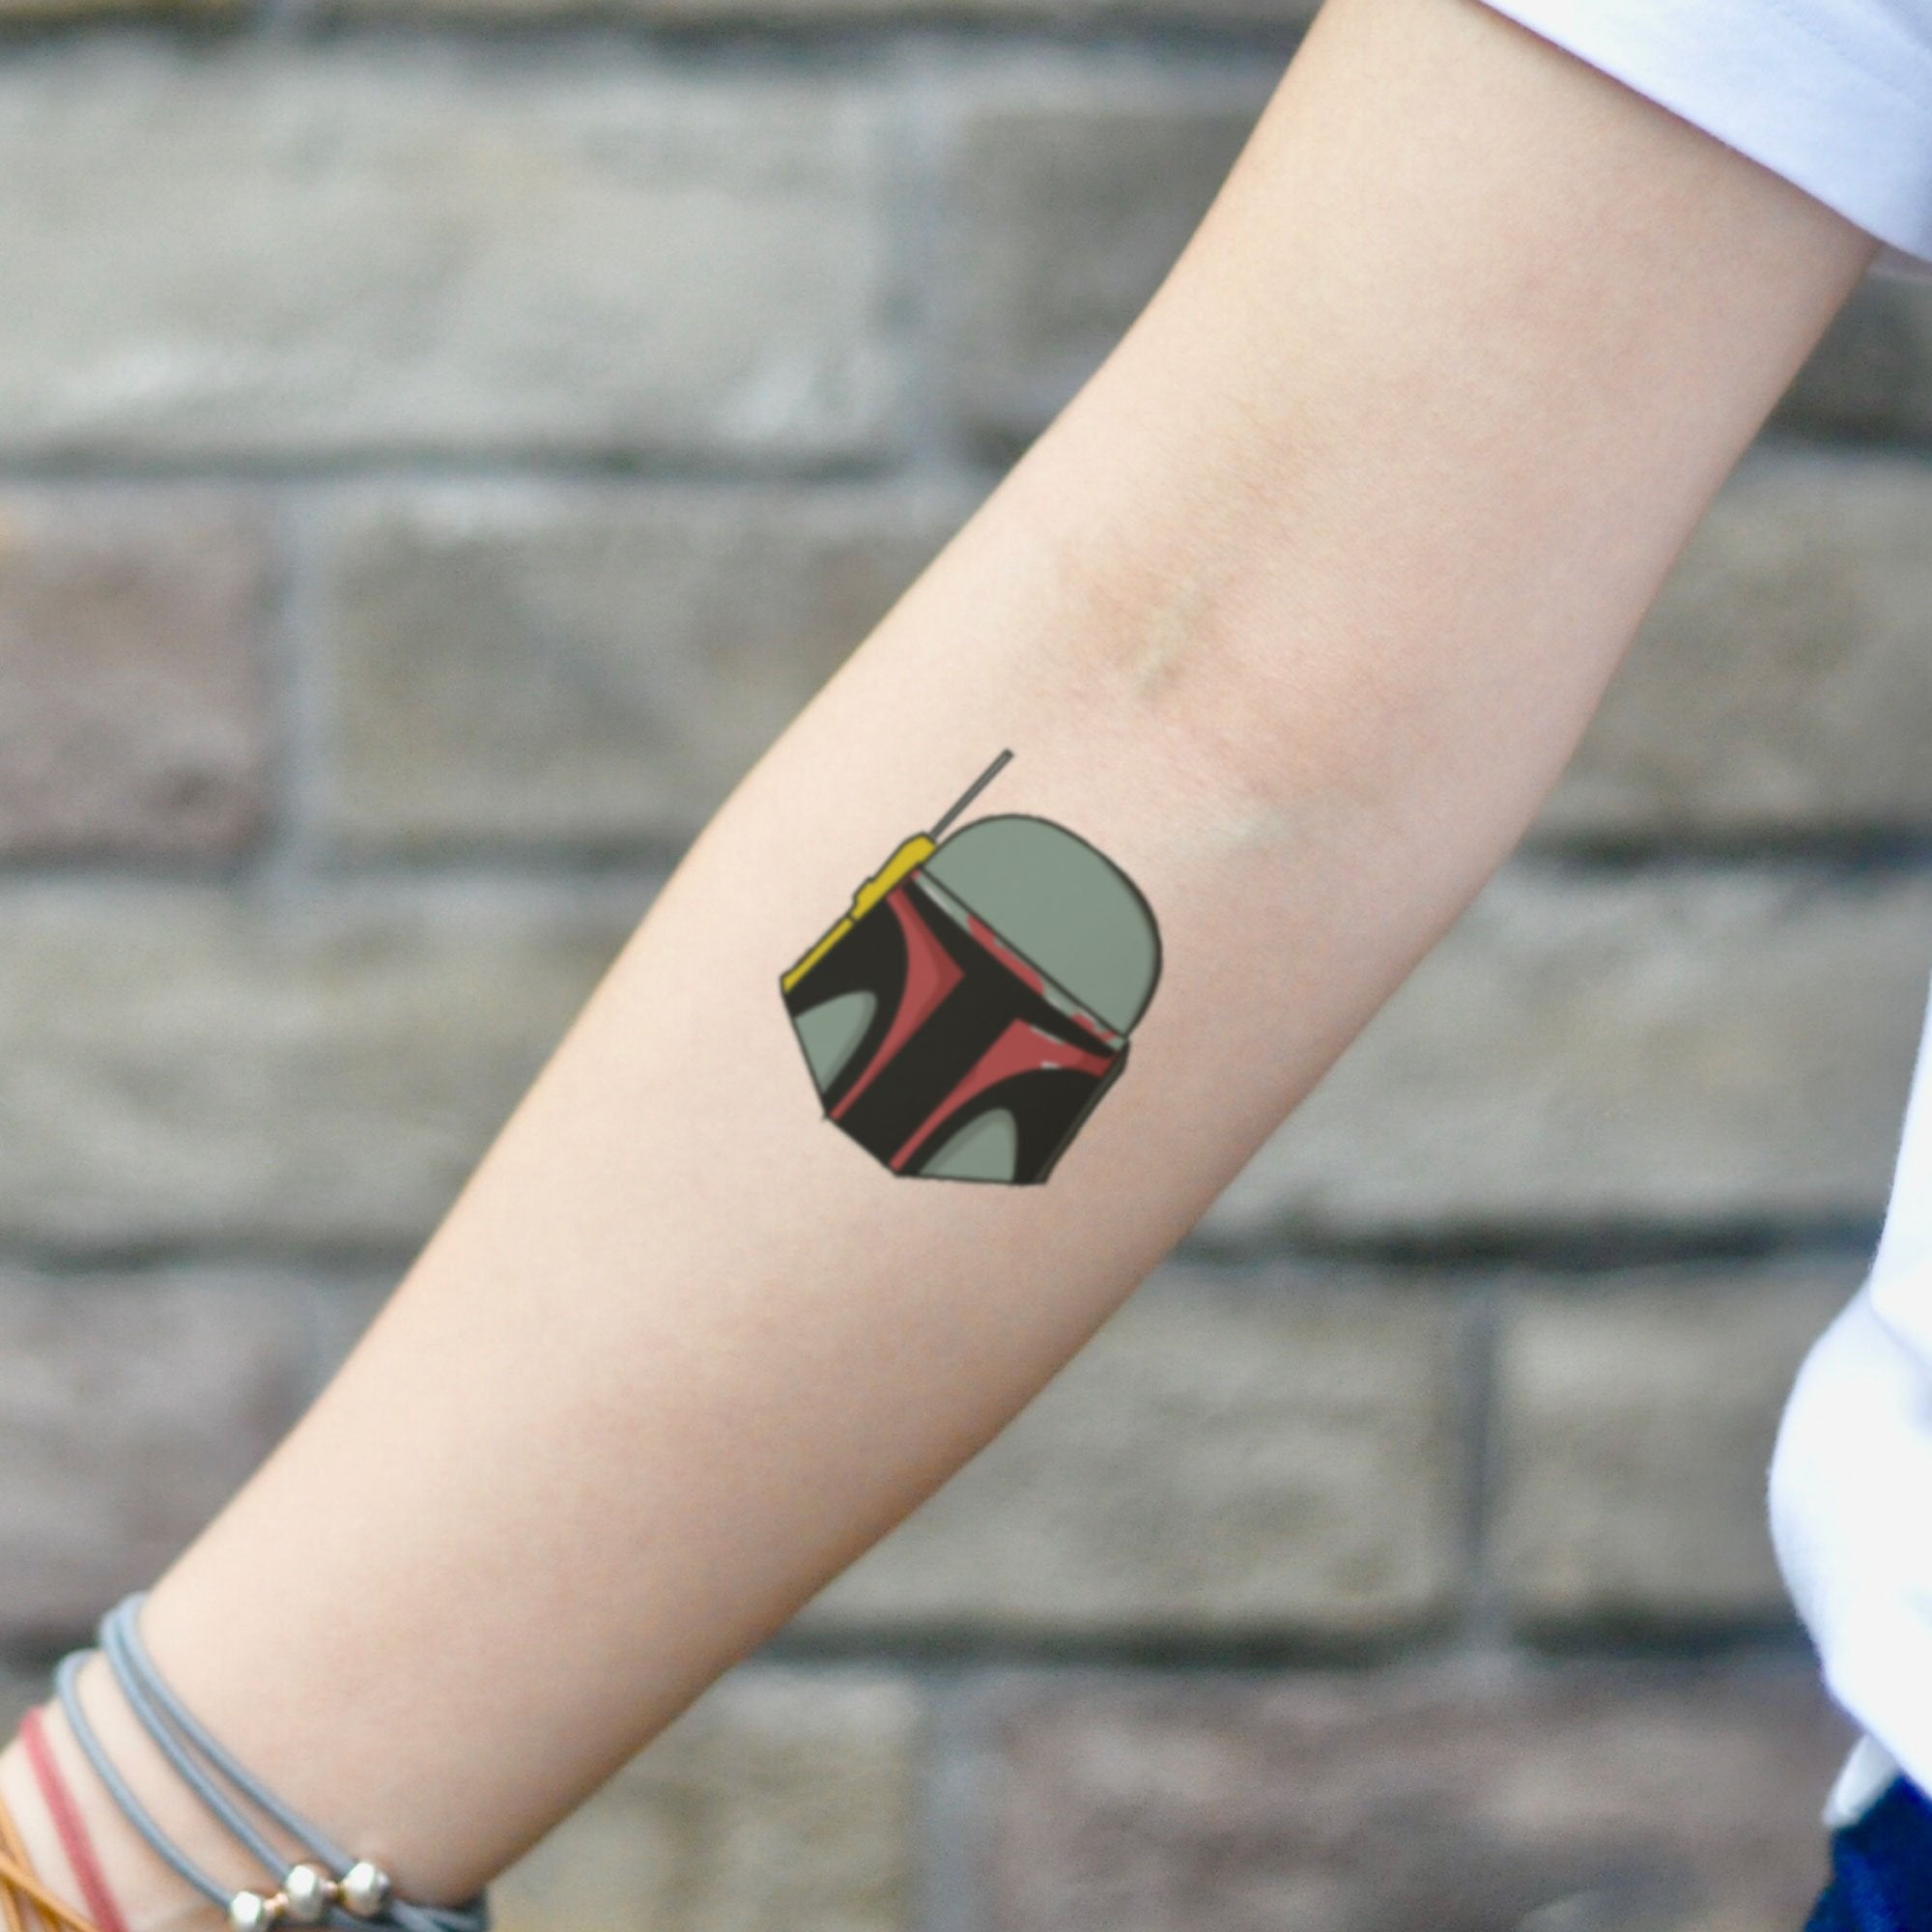 Švabo on Instagram Star wars sleeve in progress bobafett starwars  tattoo tattoos tattooart art artist artistic tattooideas  tattoodesign